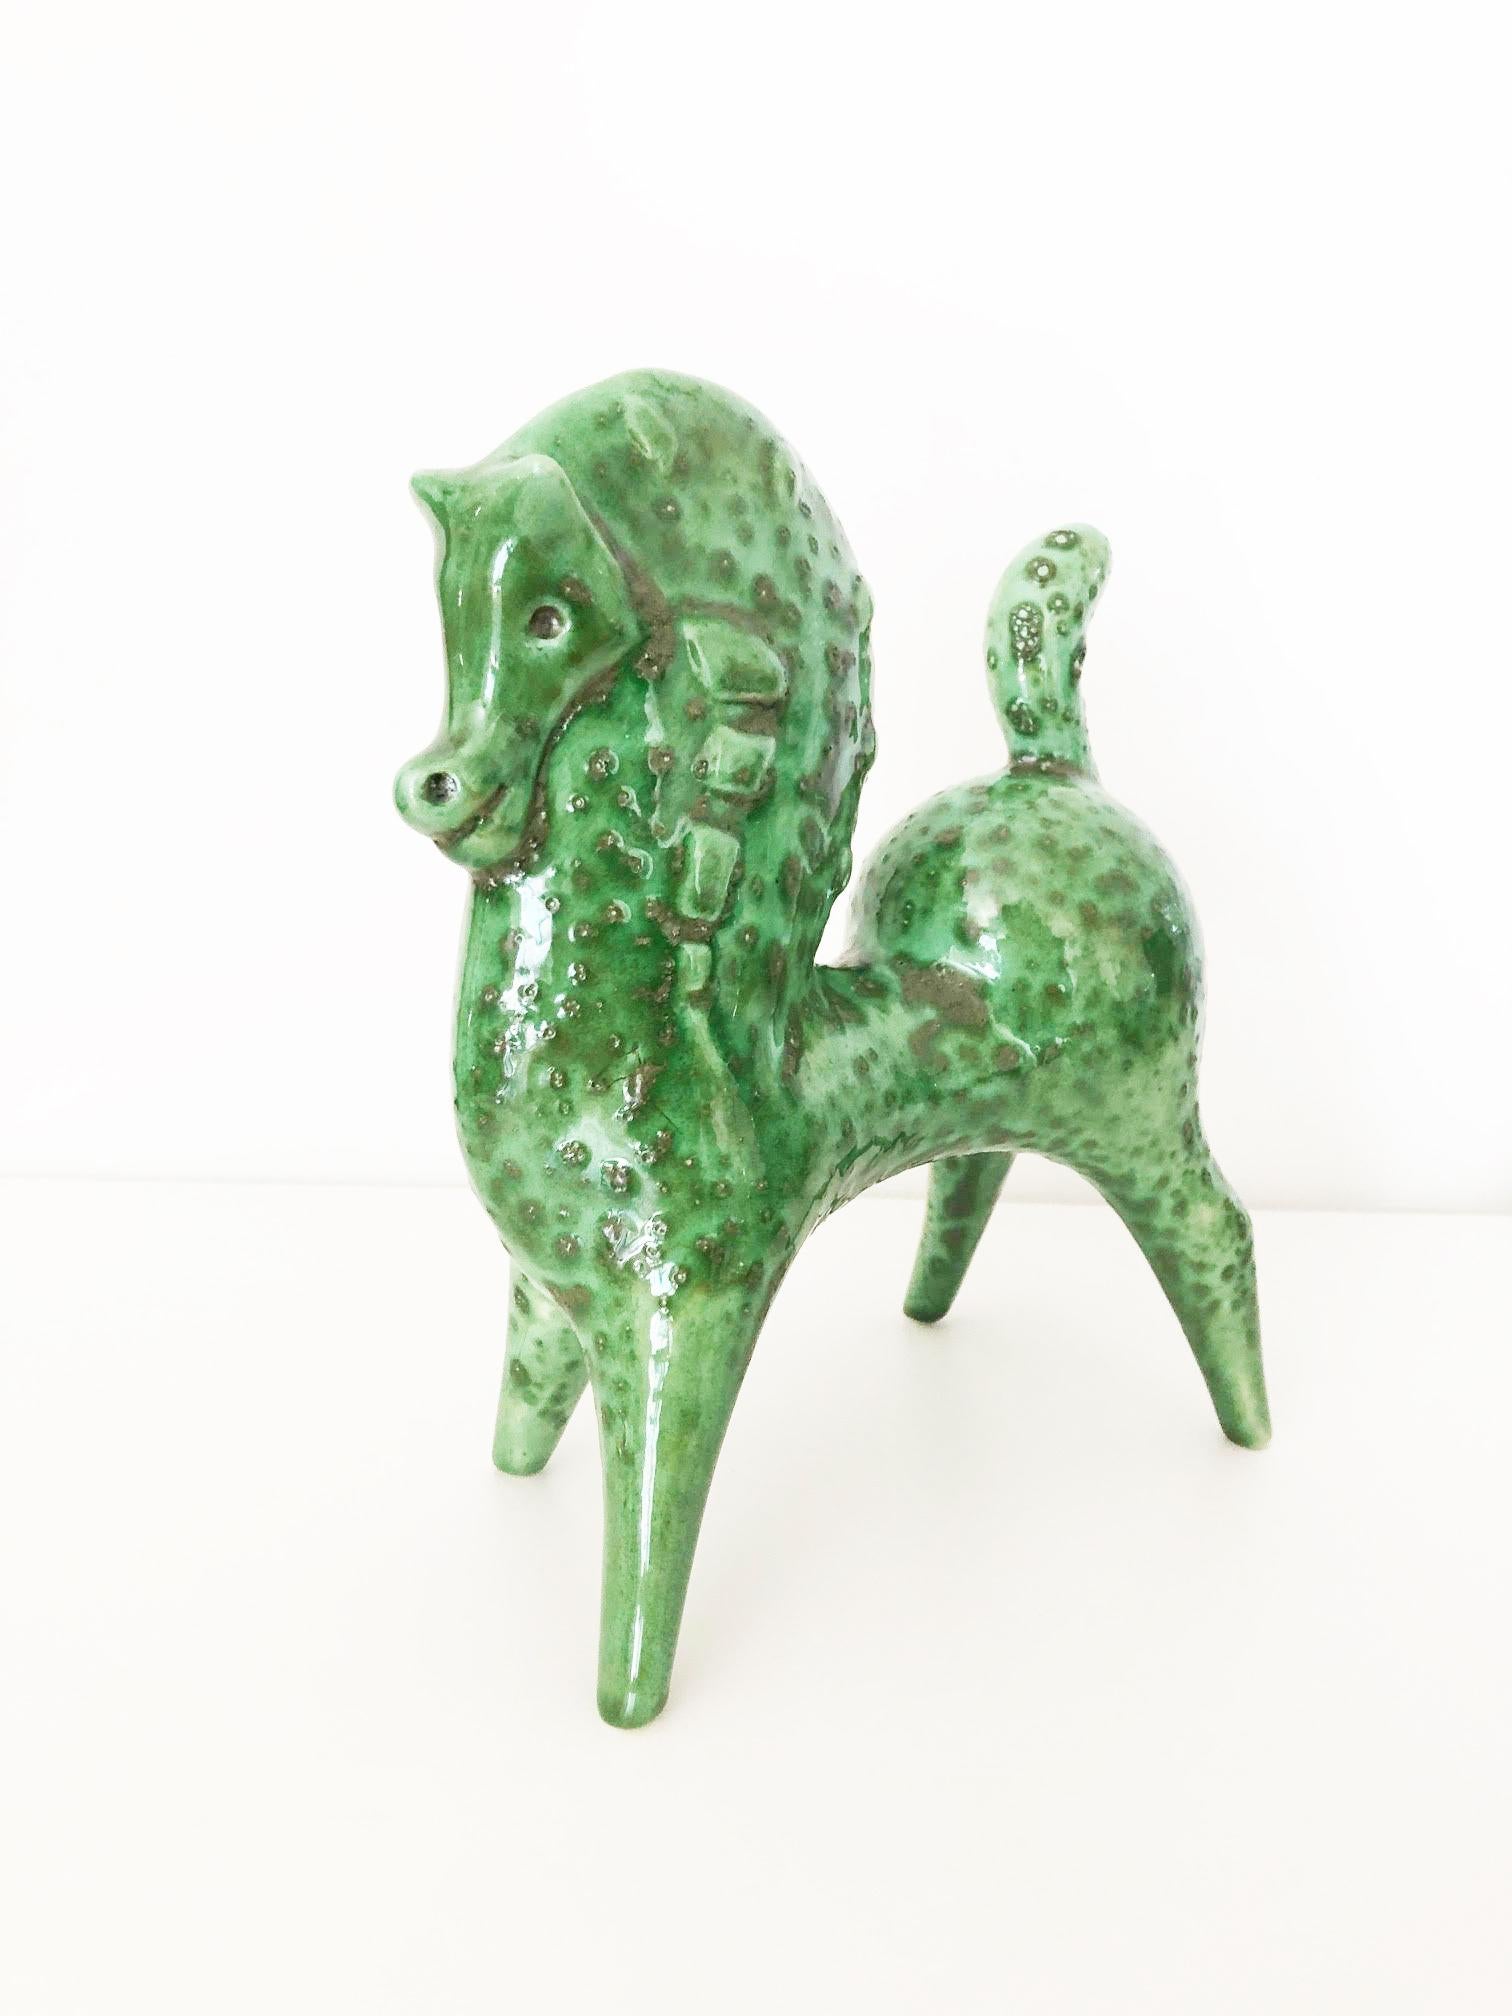 Pferdepferd von Roberto Rigon, hergestellt in Italien – Kunst –

Jahr: 1950

Materialien: signierte und glasierte Keramik, grün

Bedingungen: Perfekt

Abmessungen: ca. 30 x cm 20

